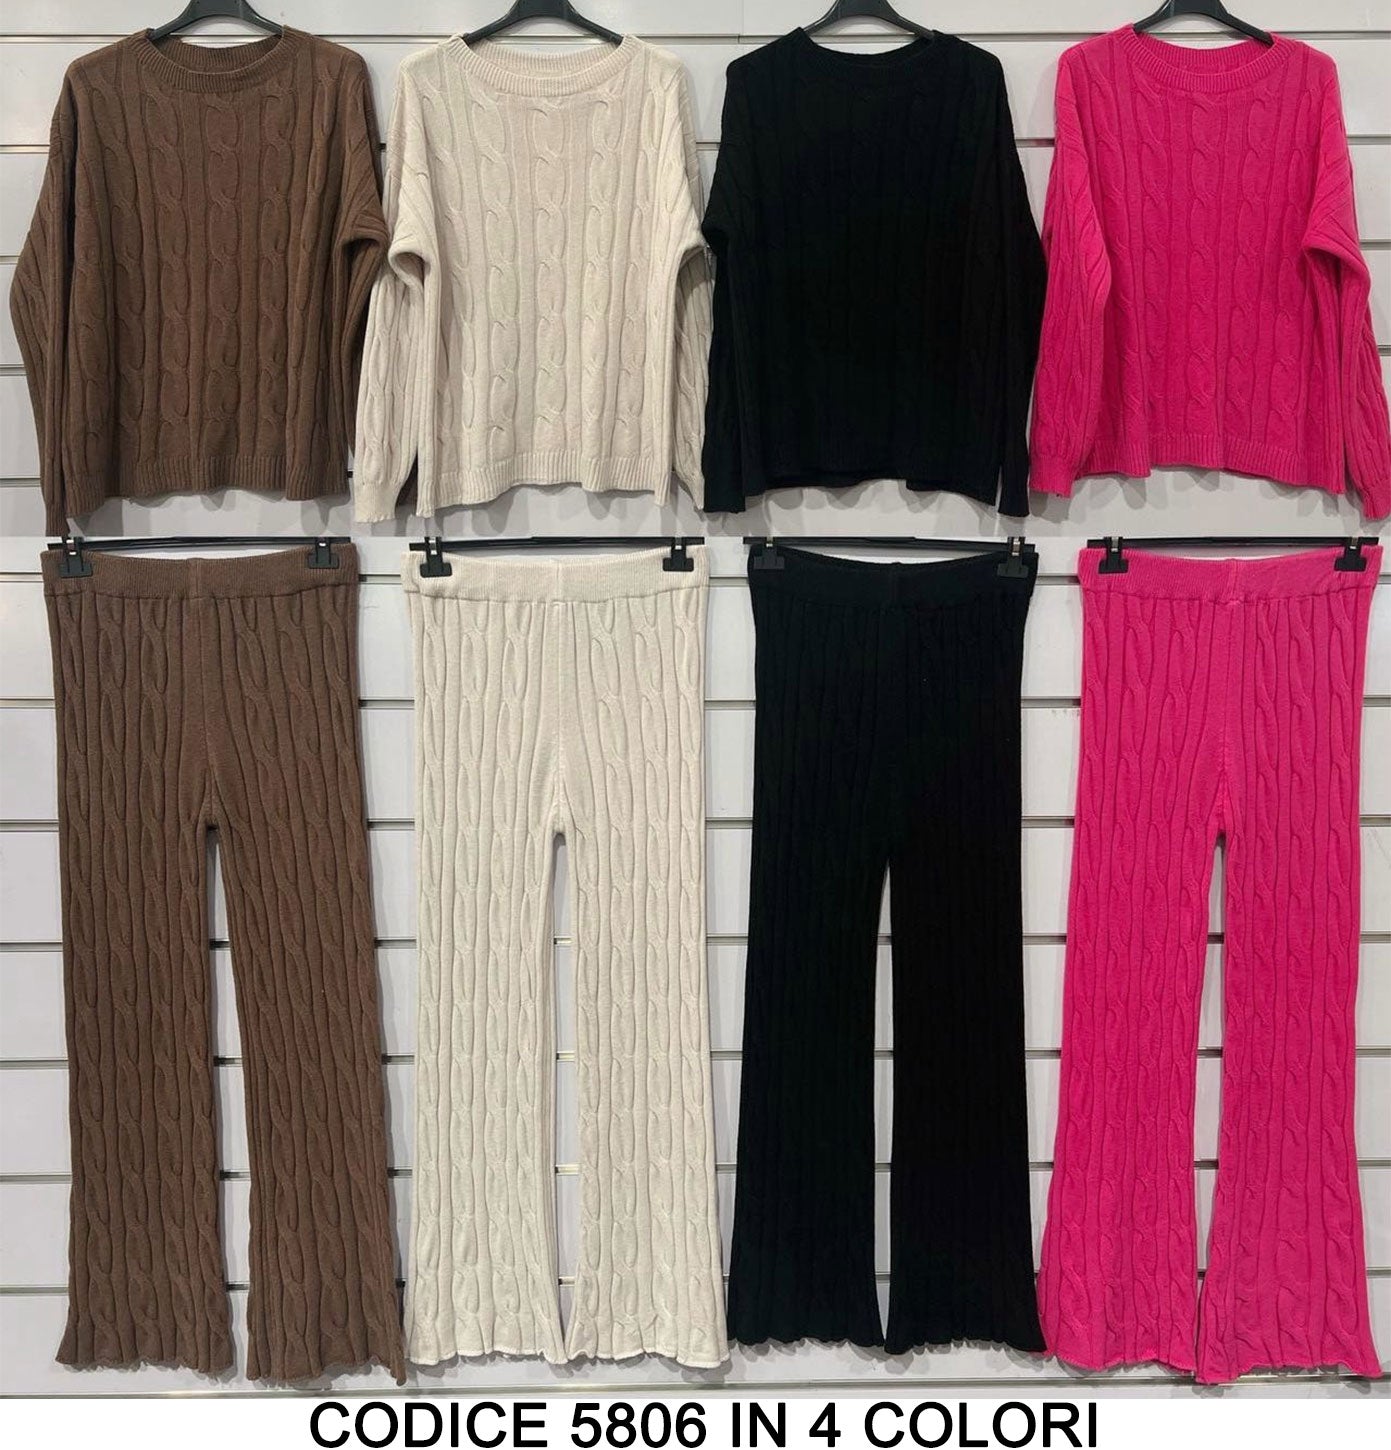 Completo Maglia e Pantalone Trama Trecce Coordinato Caldo Tuta Sportiva Casual Elegante in 4 Colori - 5806